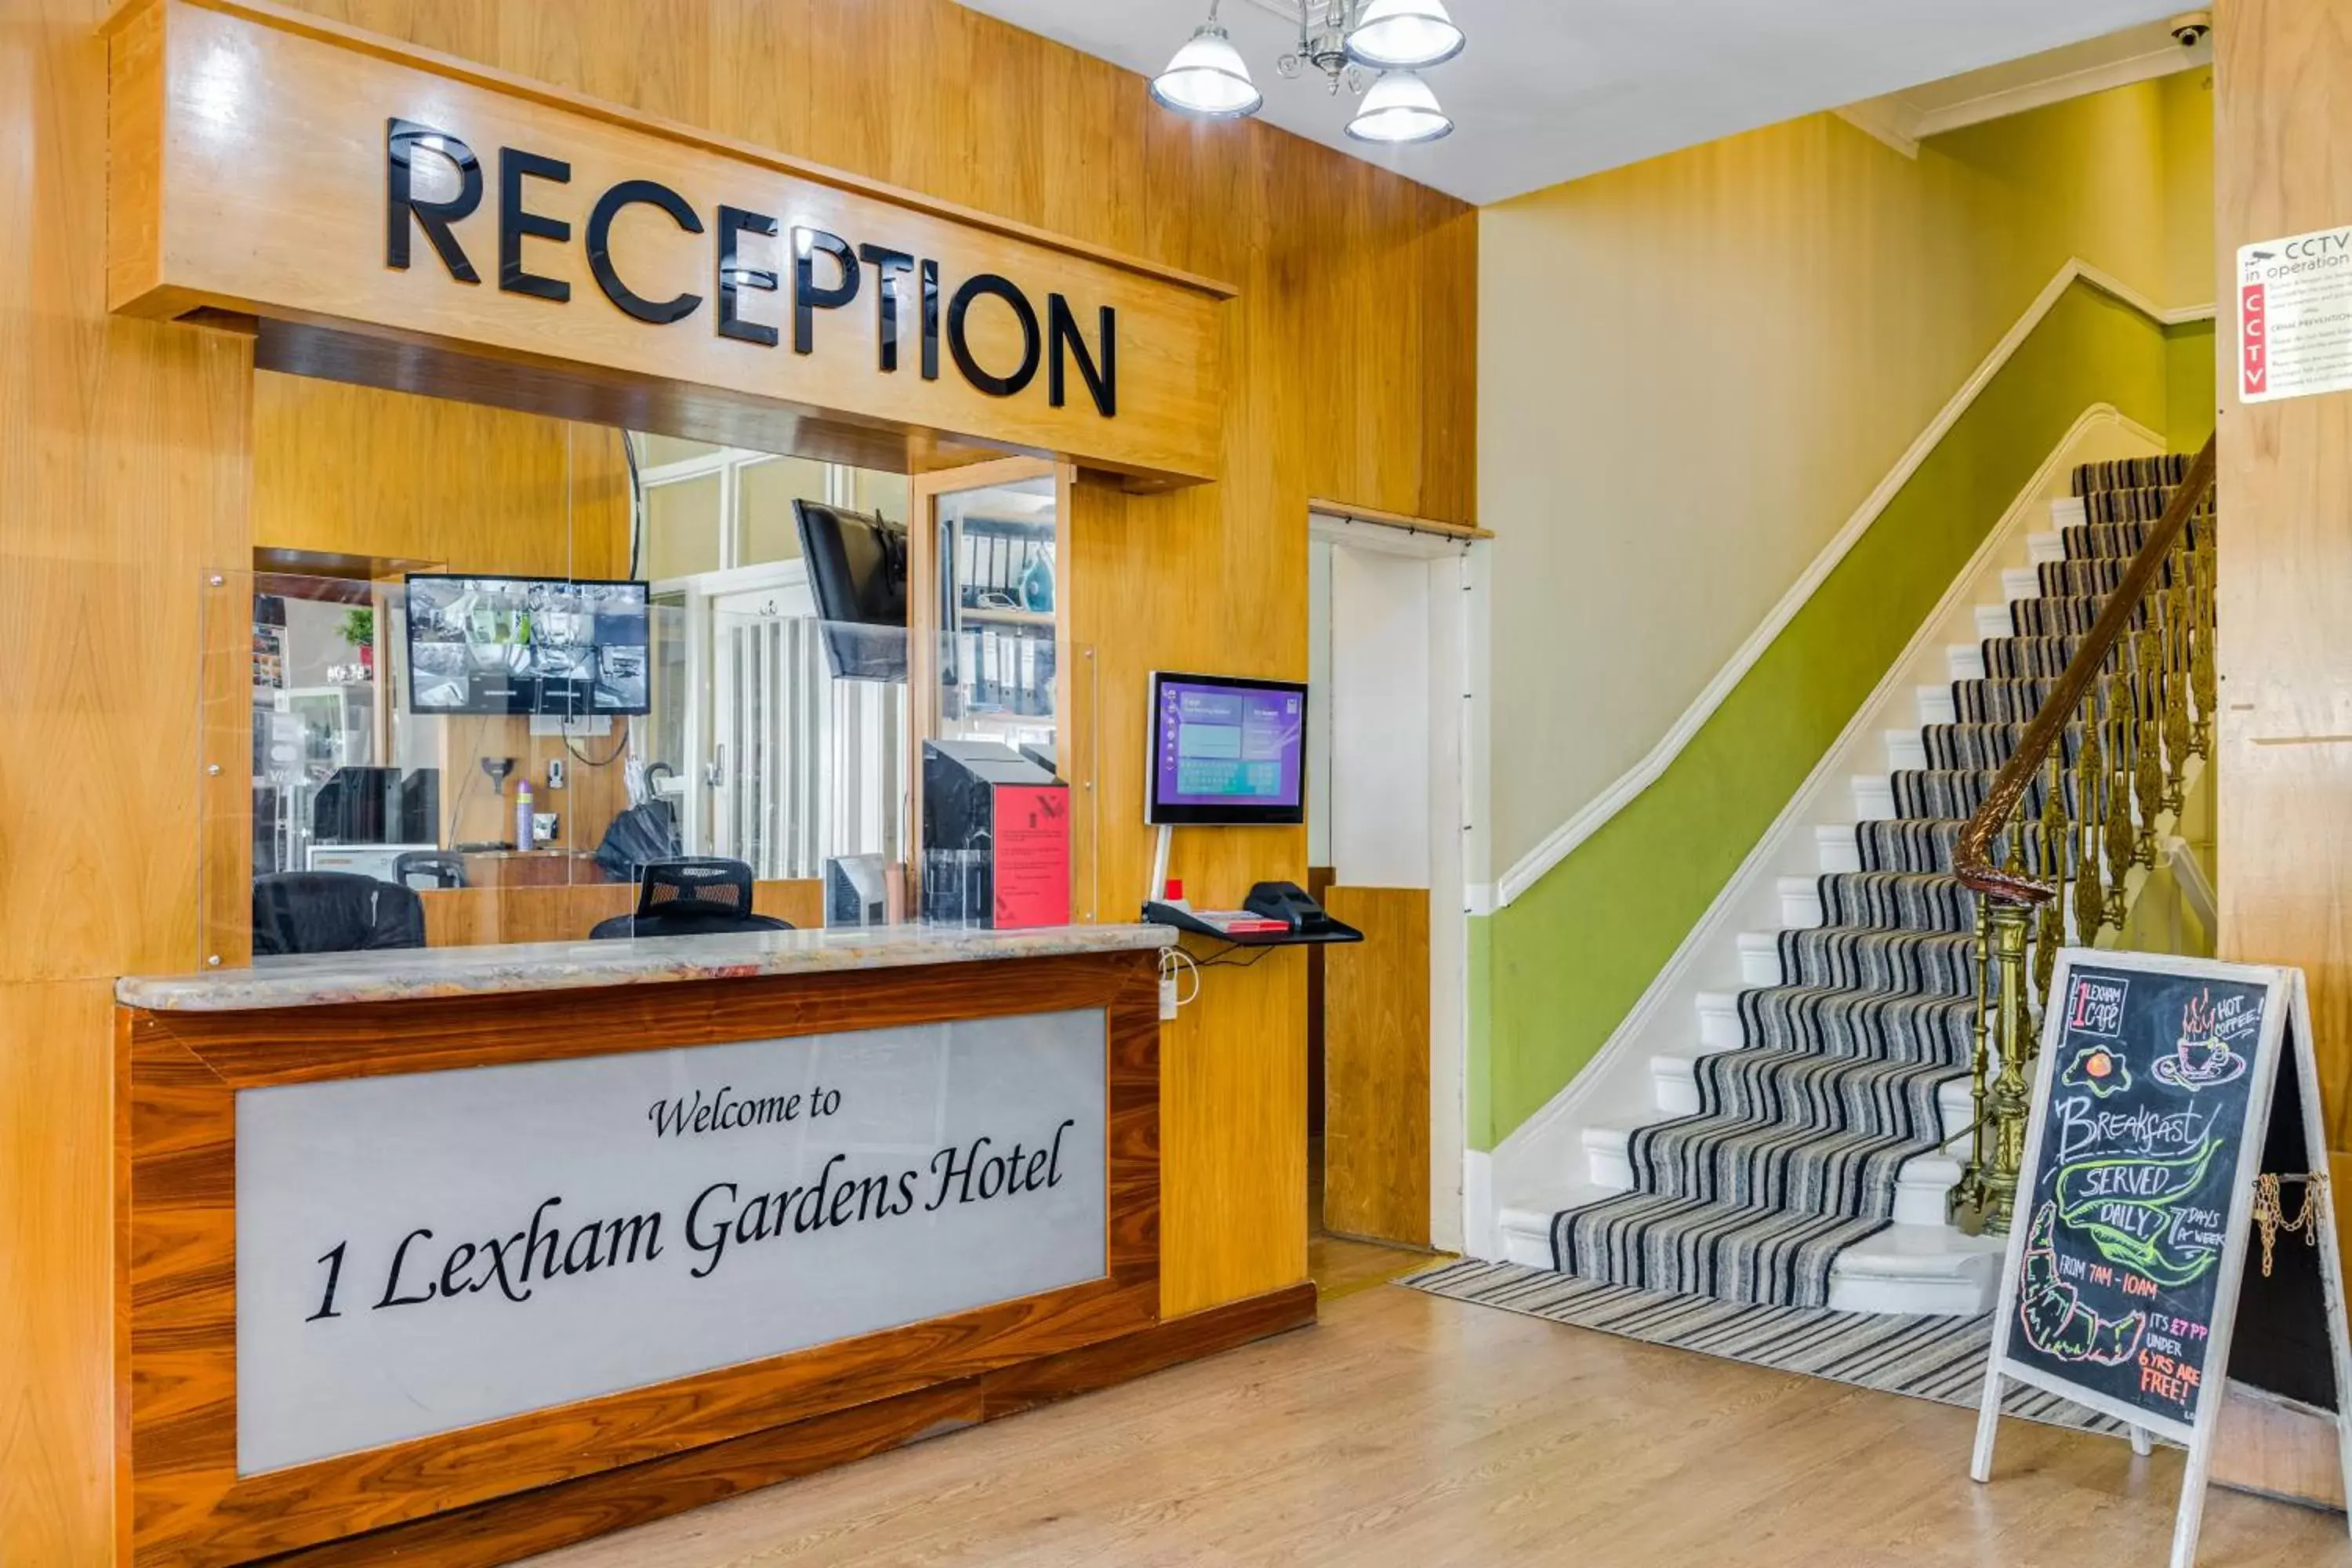 Lobby or reception, Lobby/Reception in 1 Lexham Gardens Hotel